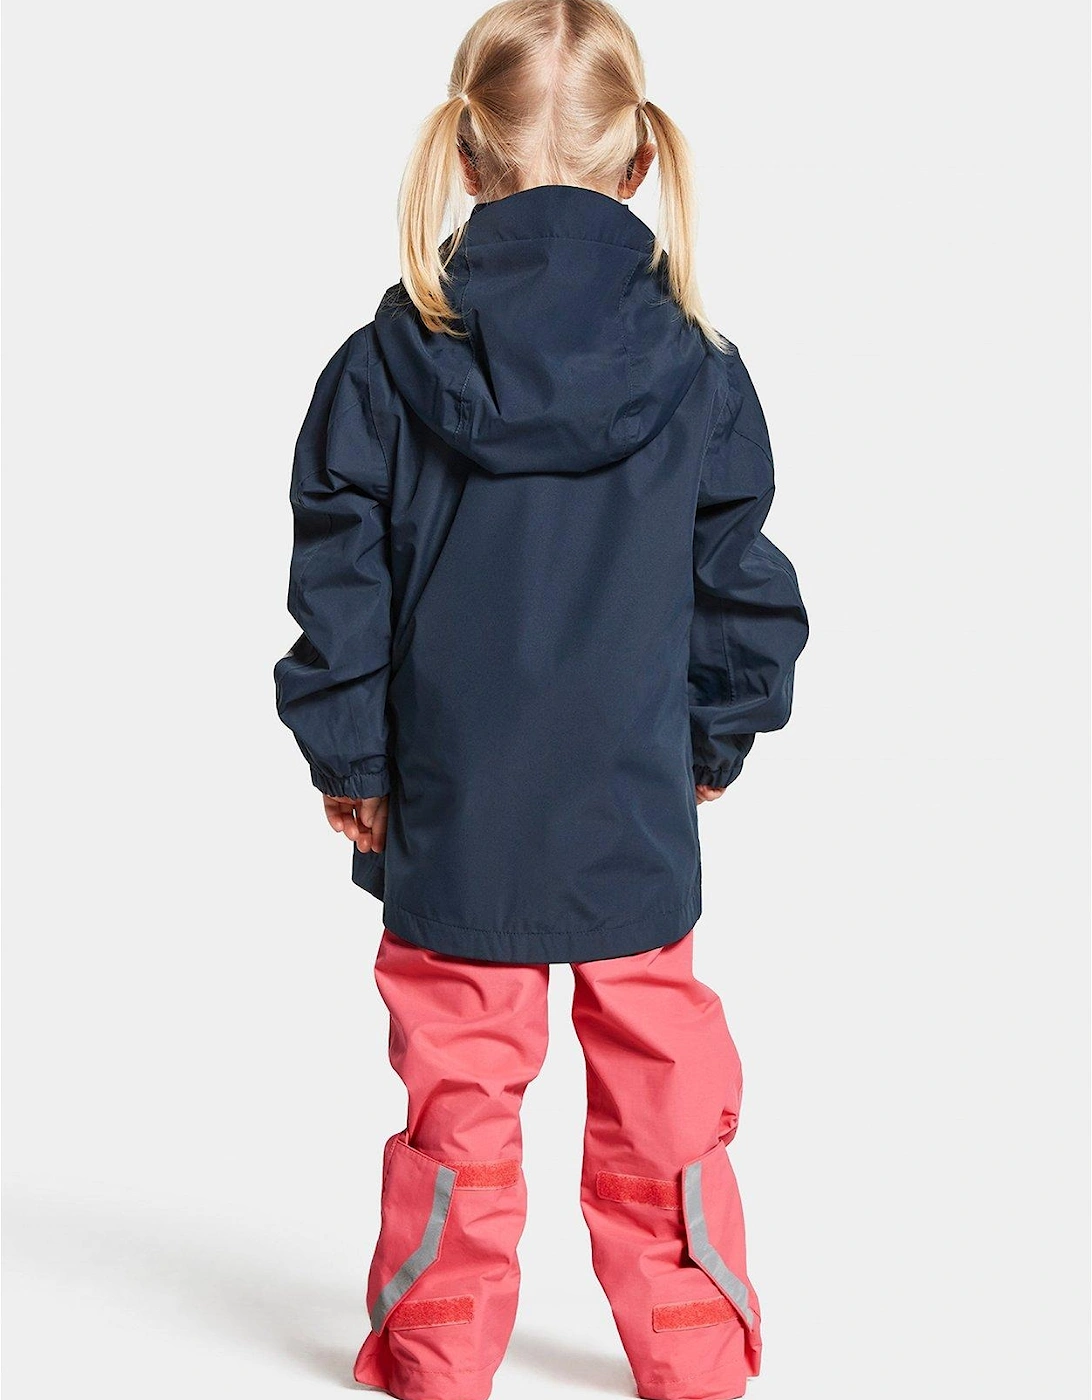 Norma Kids Waterproof Jacket - Navy